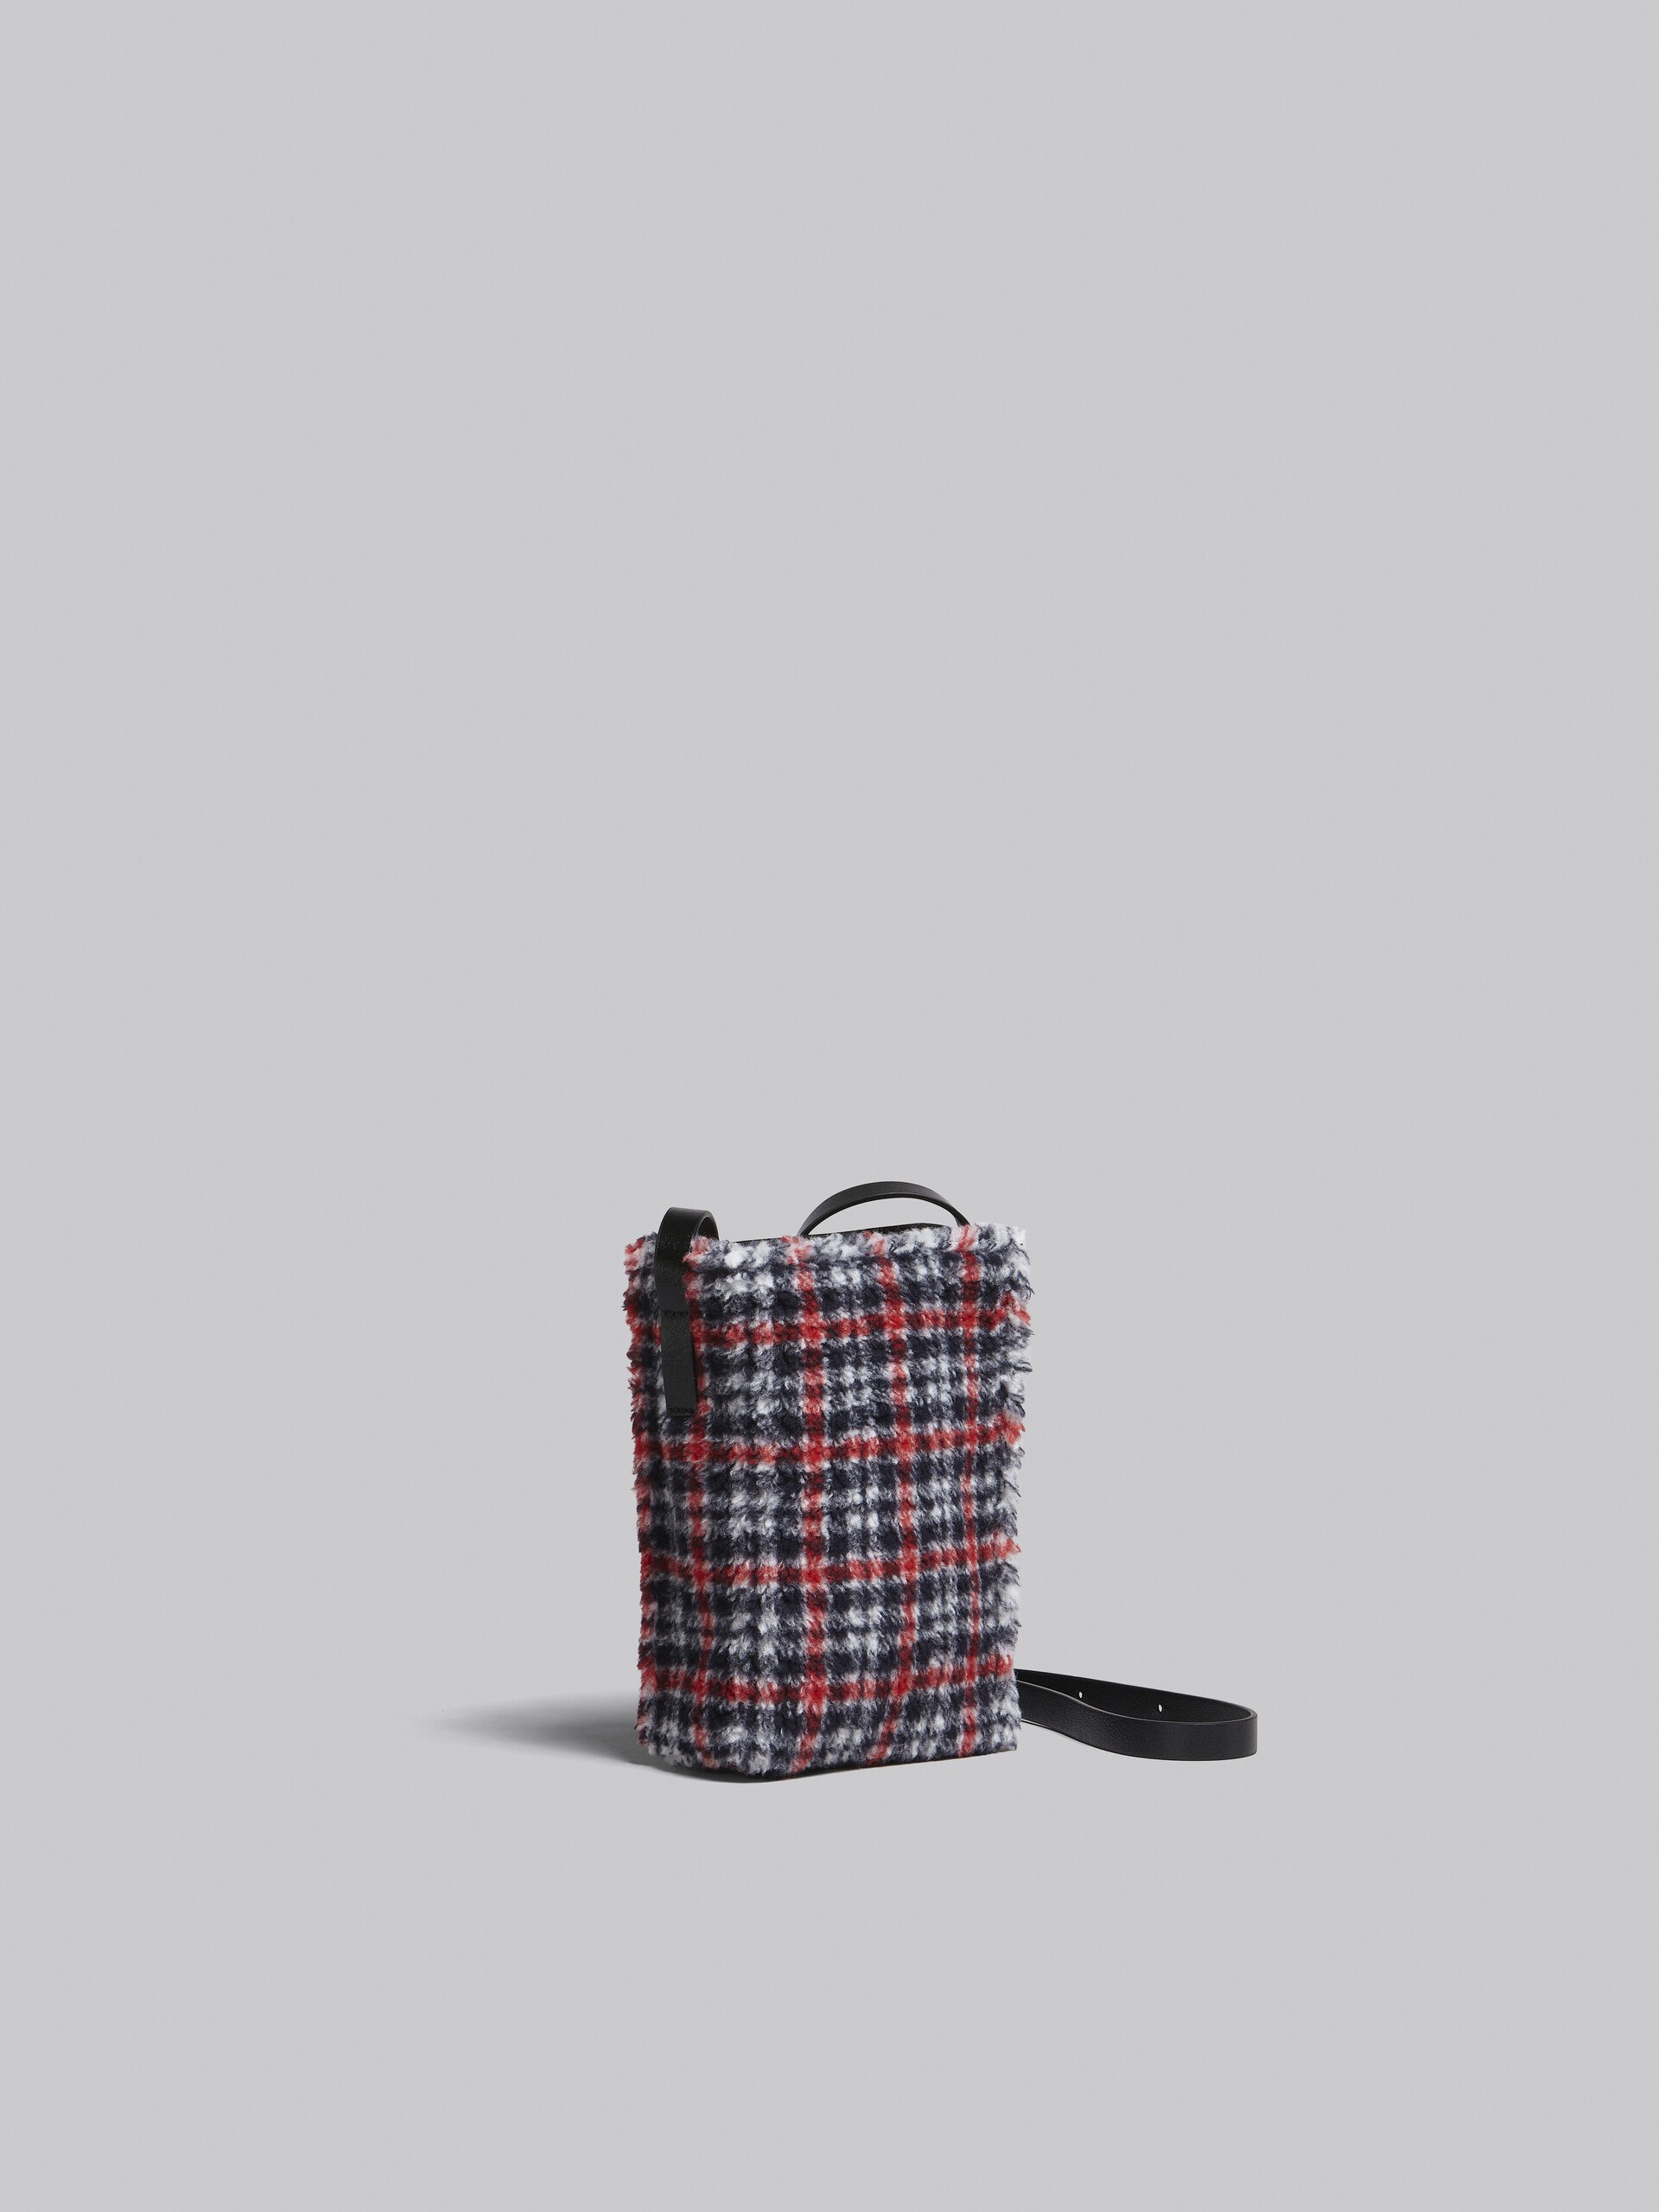 MUSEO SOFT bag piccola in tessuto check rosso - Borse a spalla - Image 3